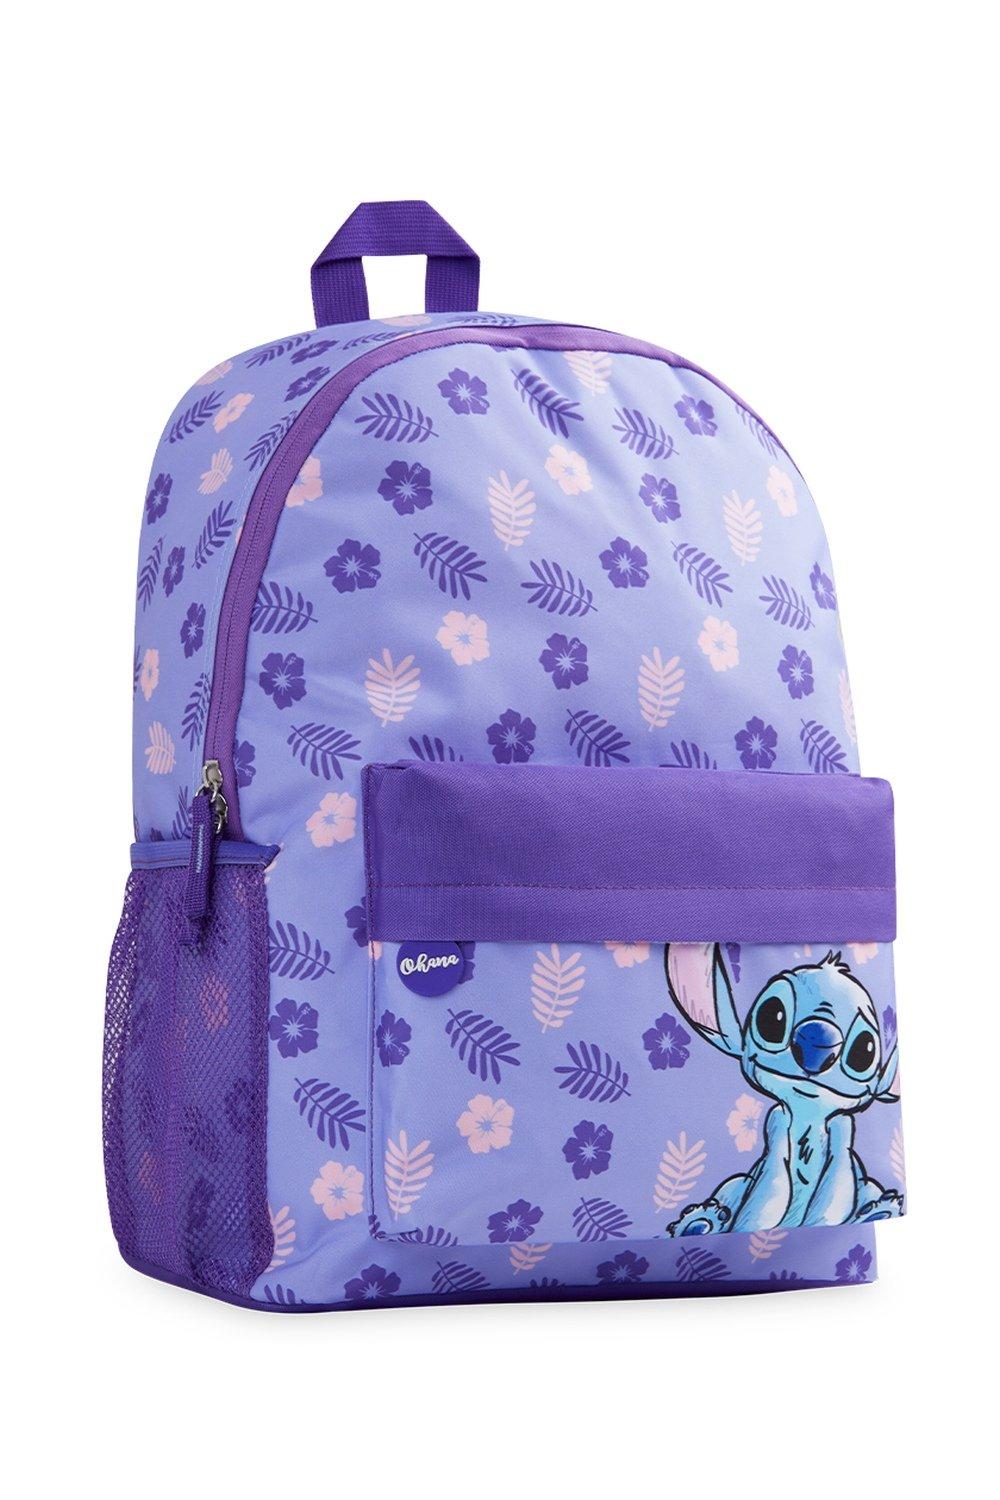 Школьная сумка Лило и Стич Disney, фиолетовый disney anime lilo